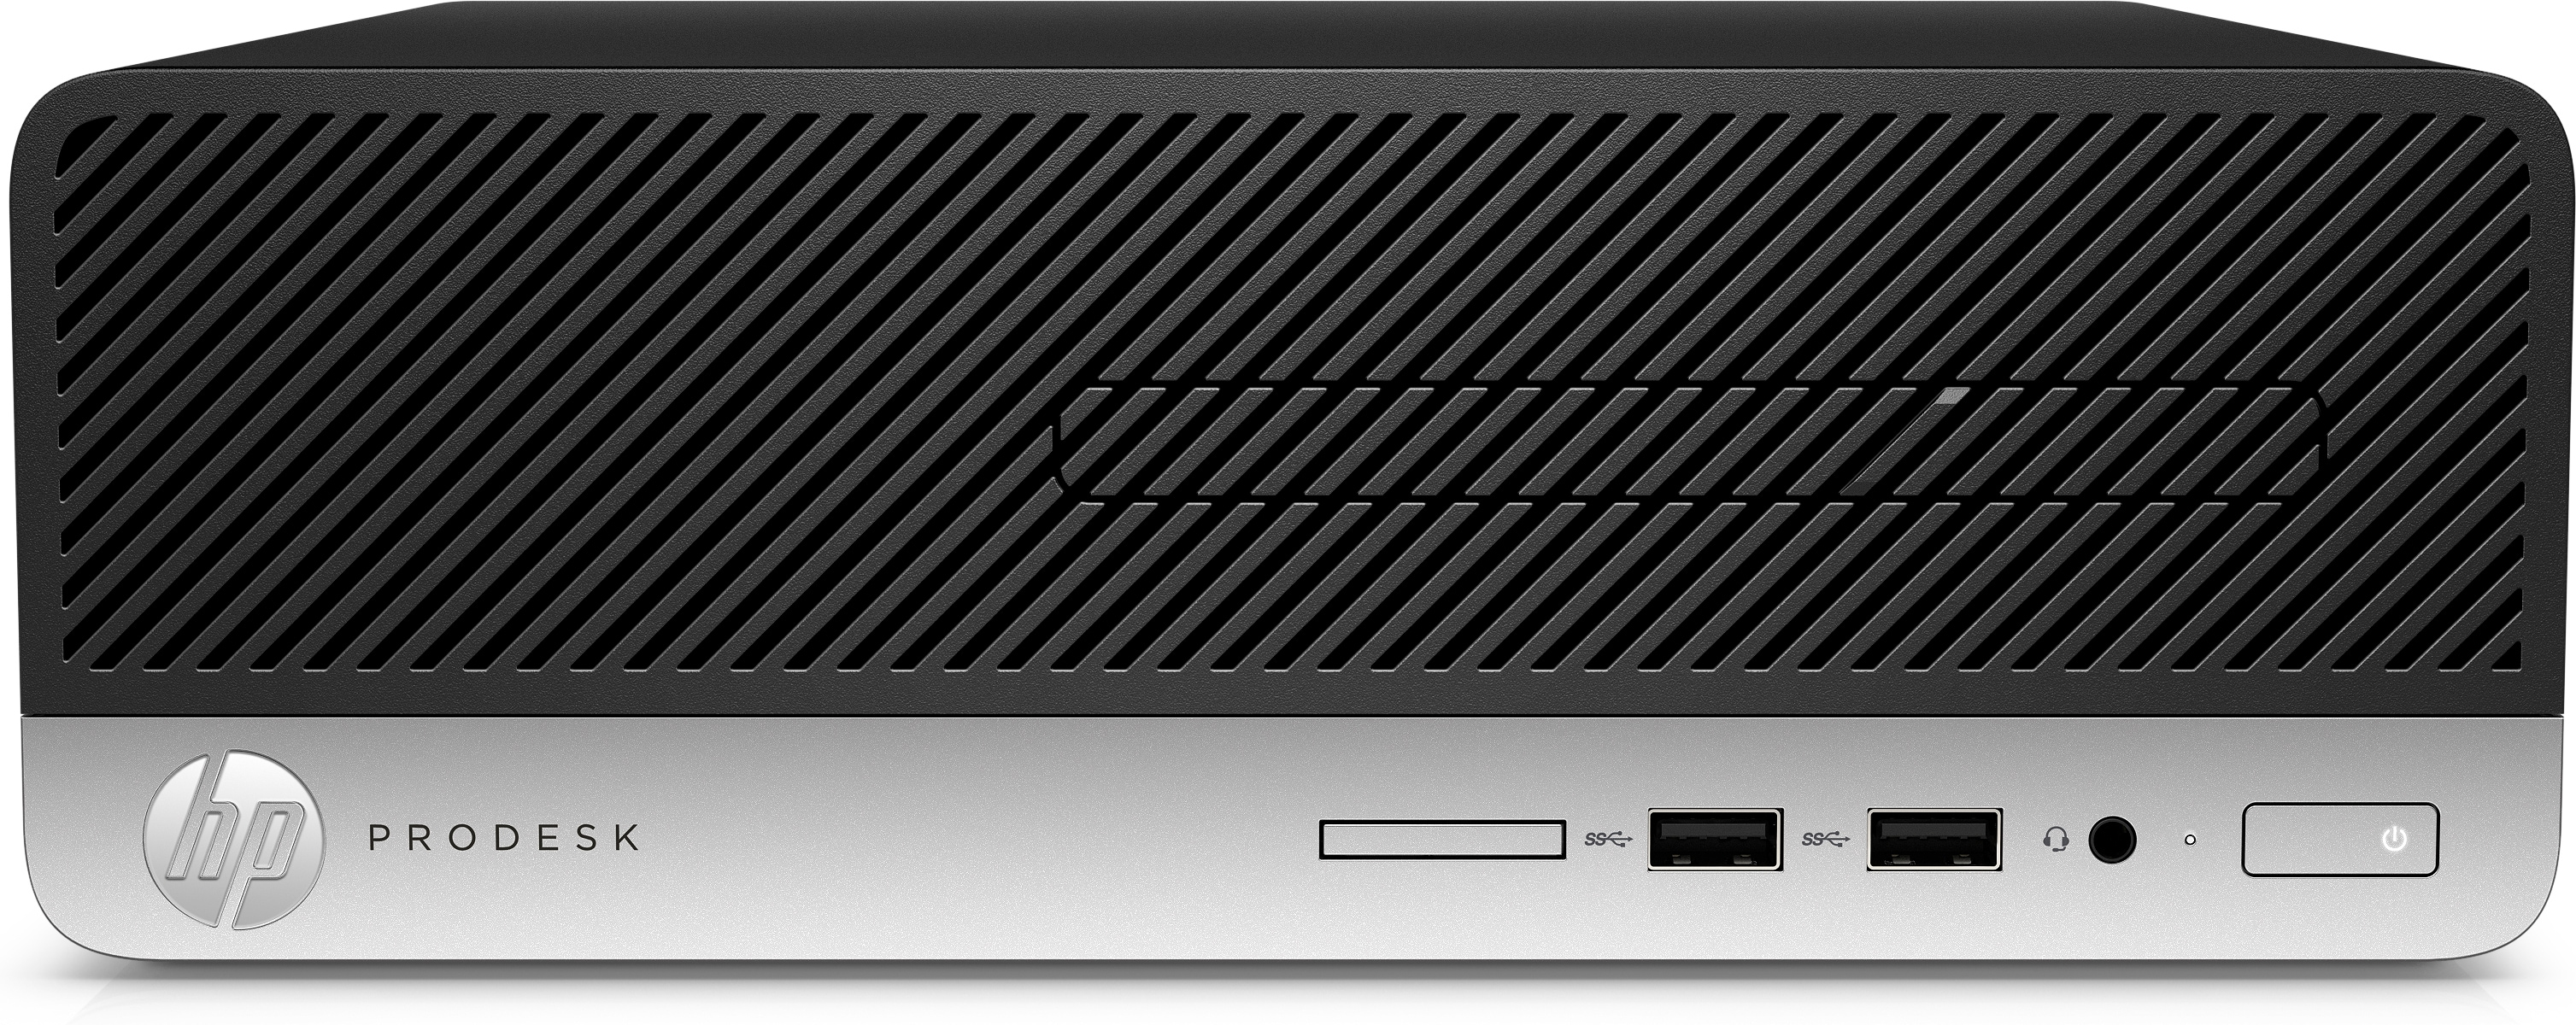 Desktop Hp 400 G4 Sff Core I5-7500 4Gb 1Tb Win 10 Pro 1Kc20Lt